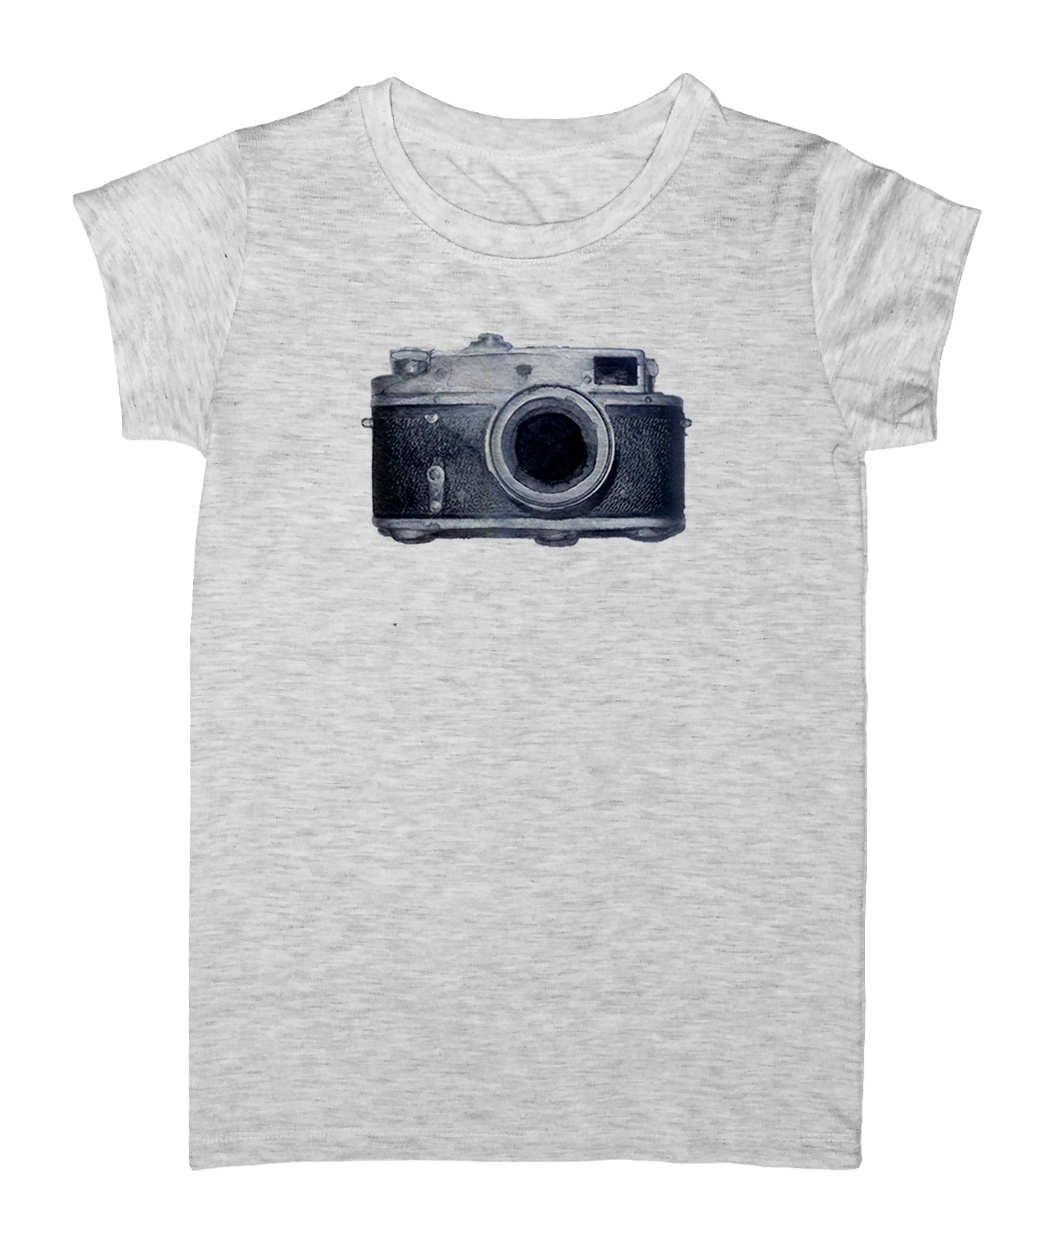 تی شرت زنانه طرح دوربین عکاسی مدل EZM56